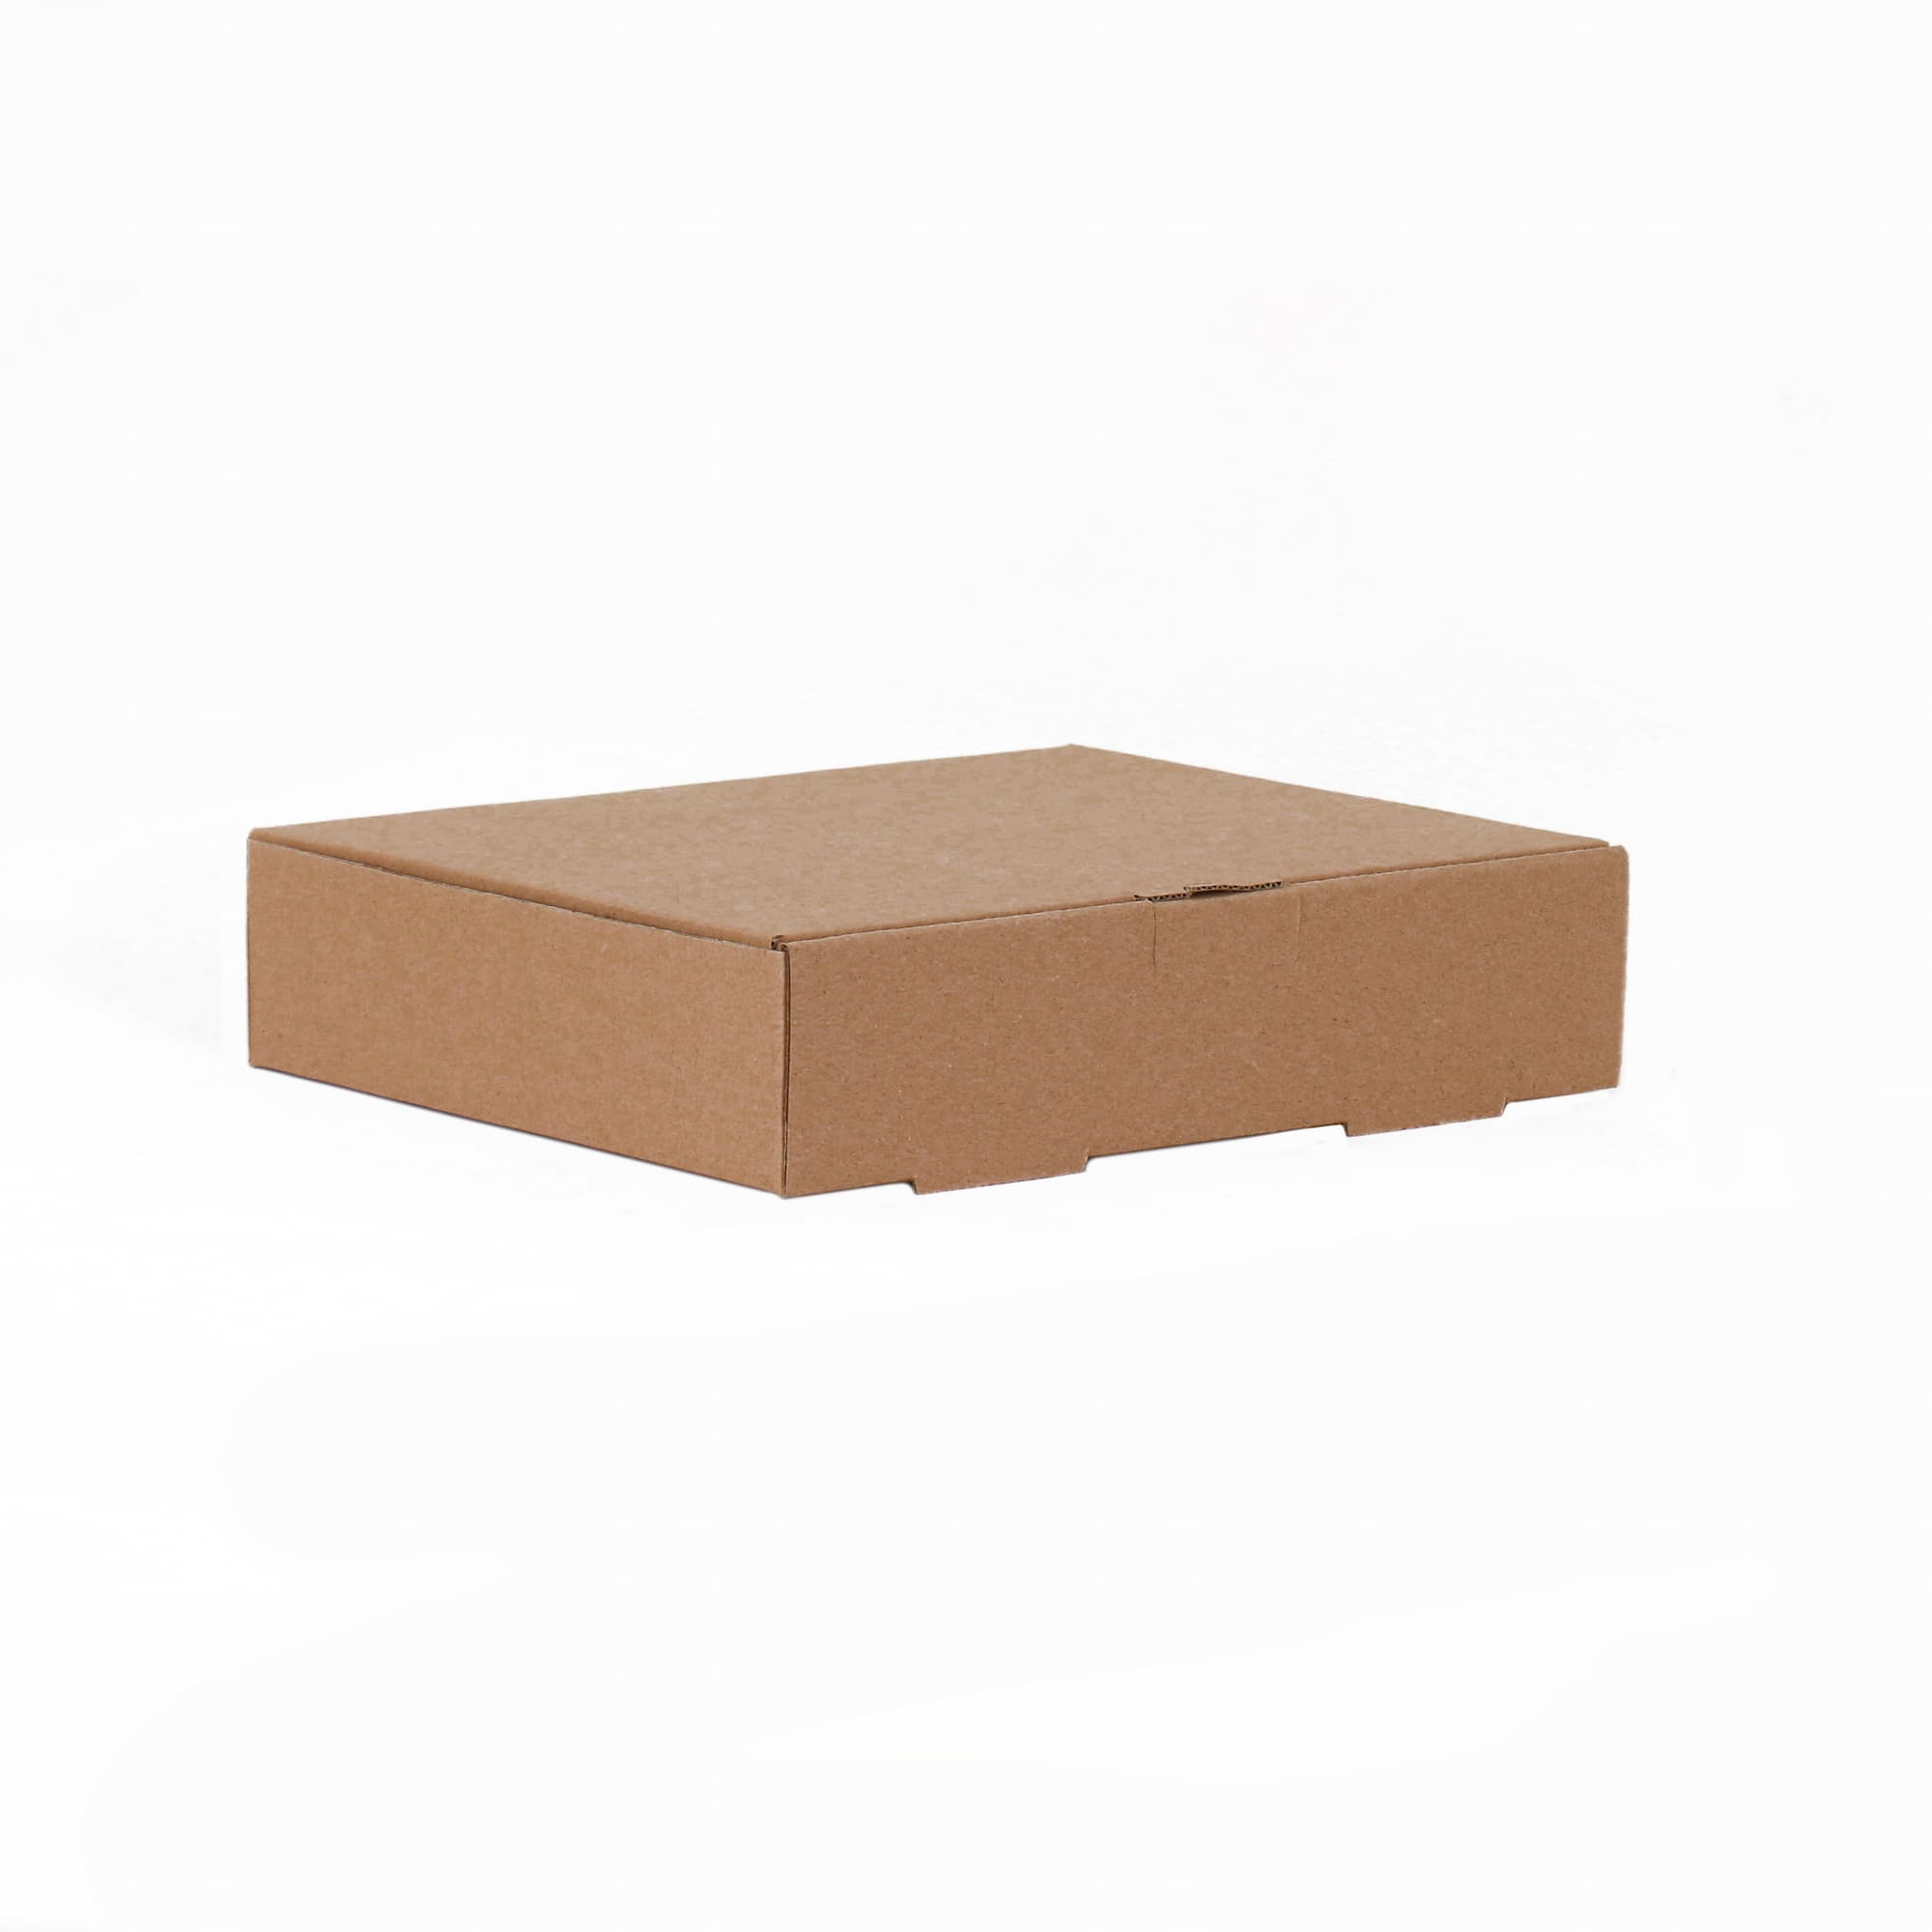 جعبه بسته بندی مدل k2pc بسته ده عددی